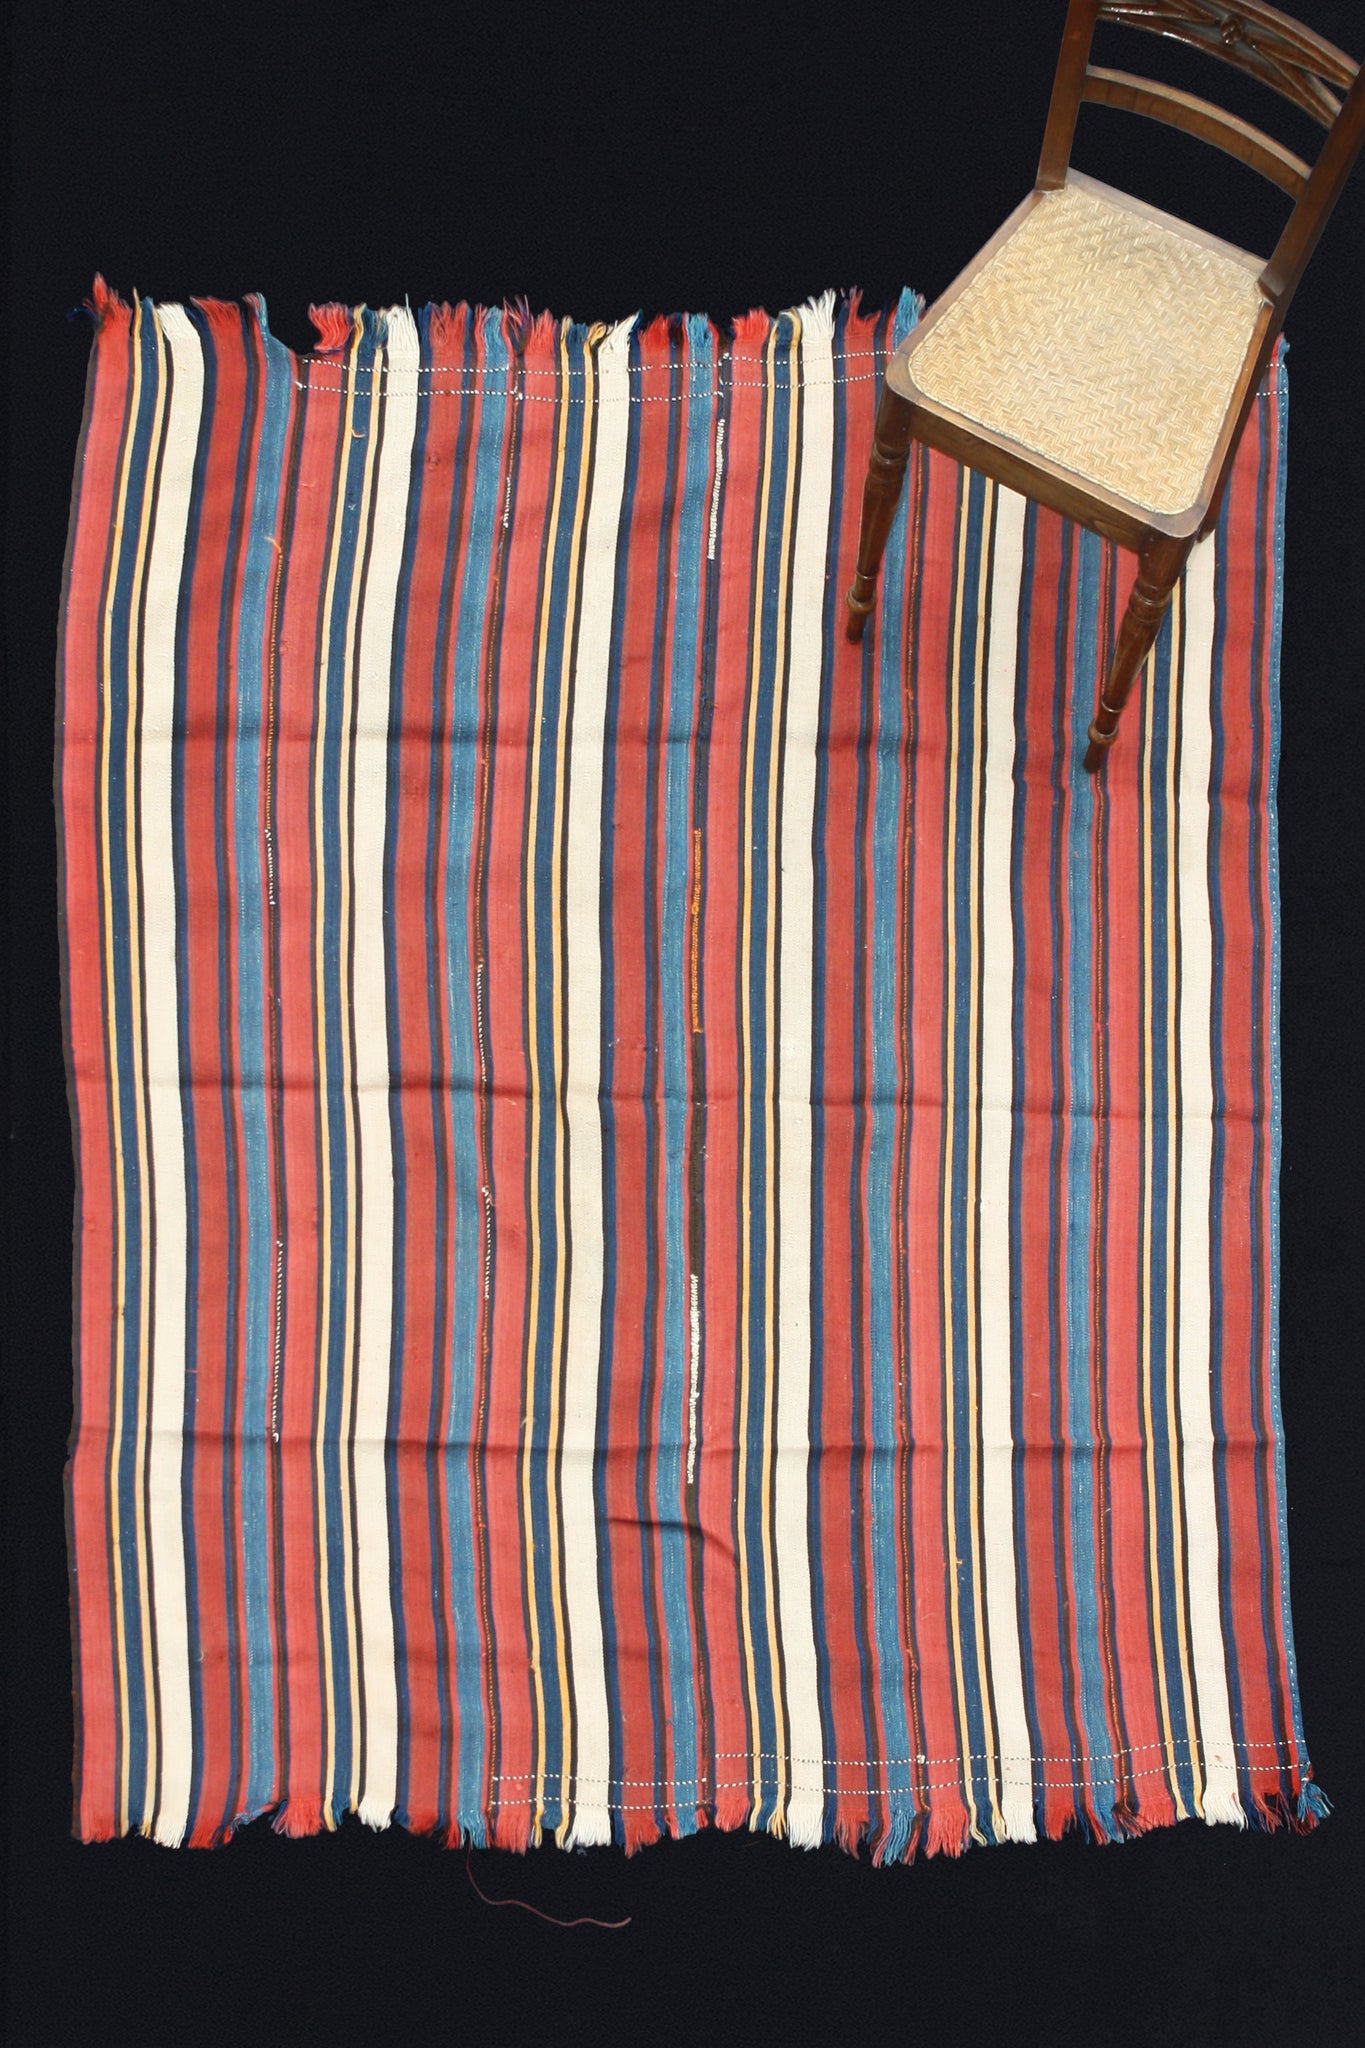 Anatolian Striped Kilim In Red, Blue & Cream (5' 10'' x 7' 10'')